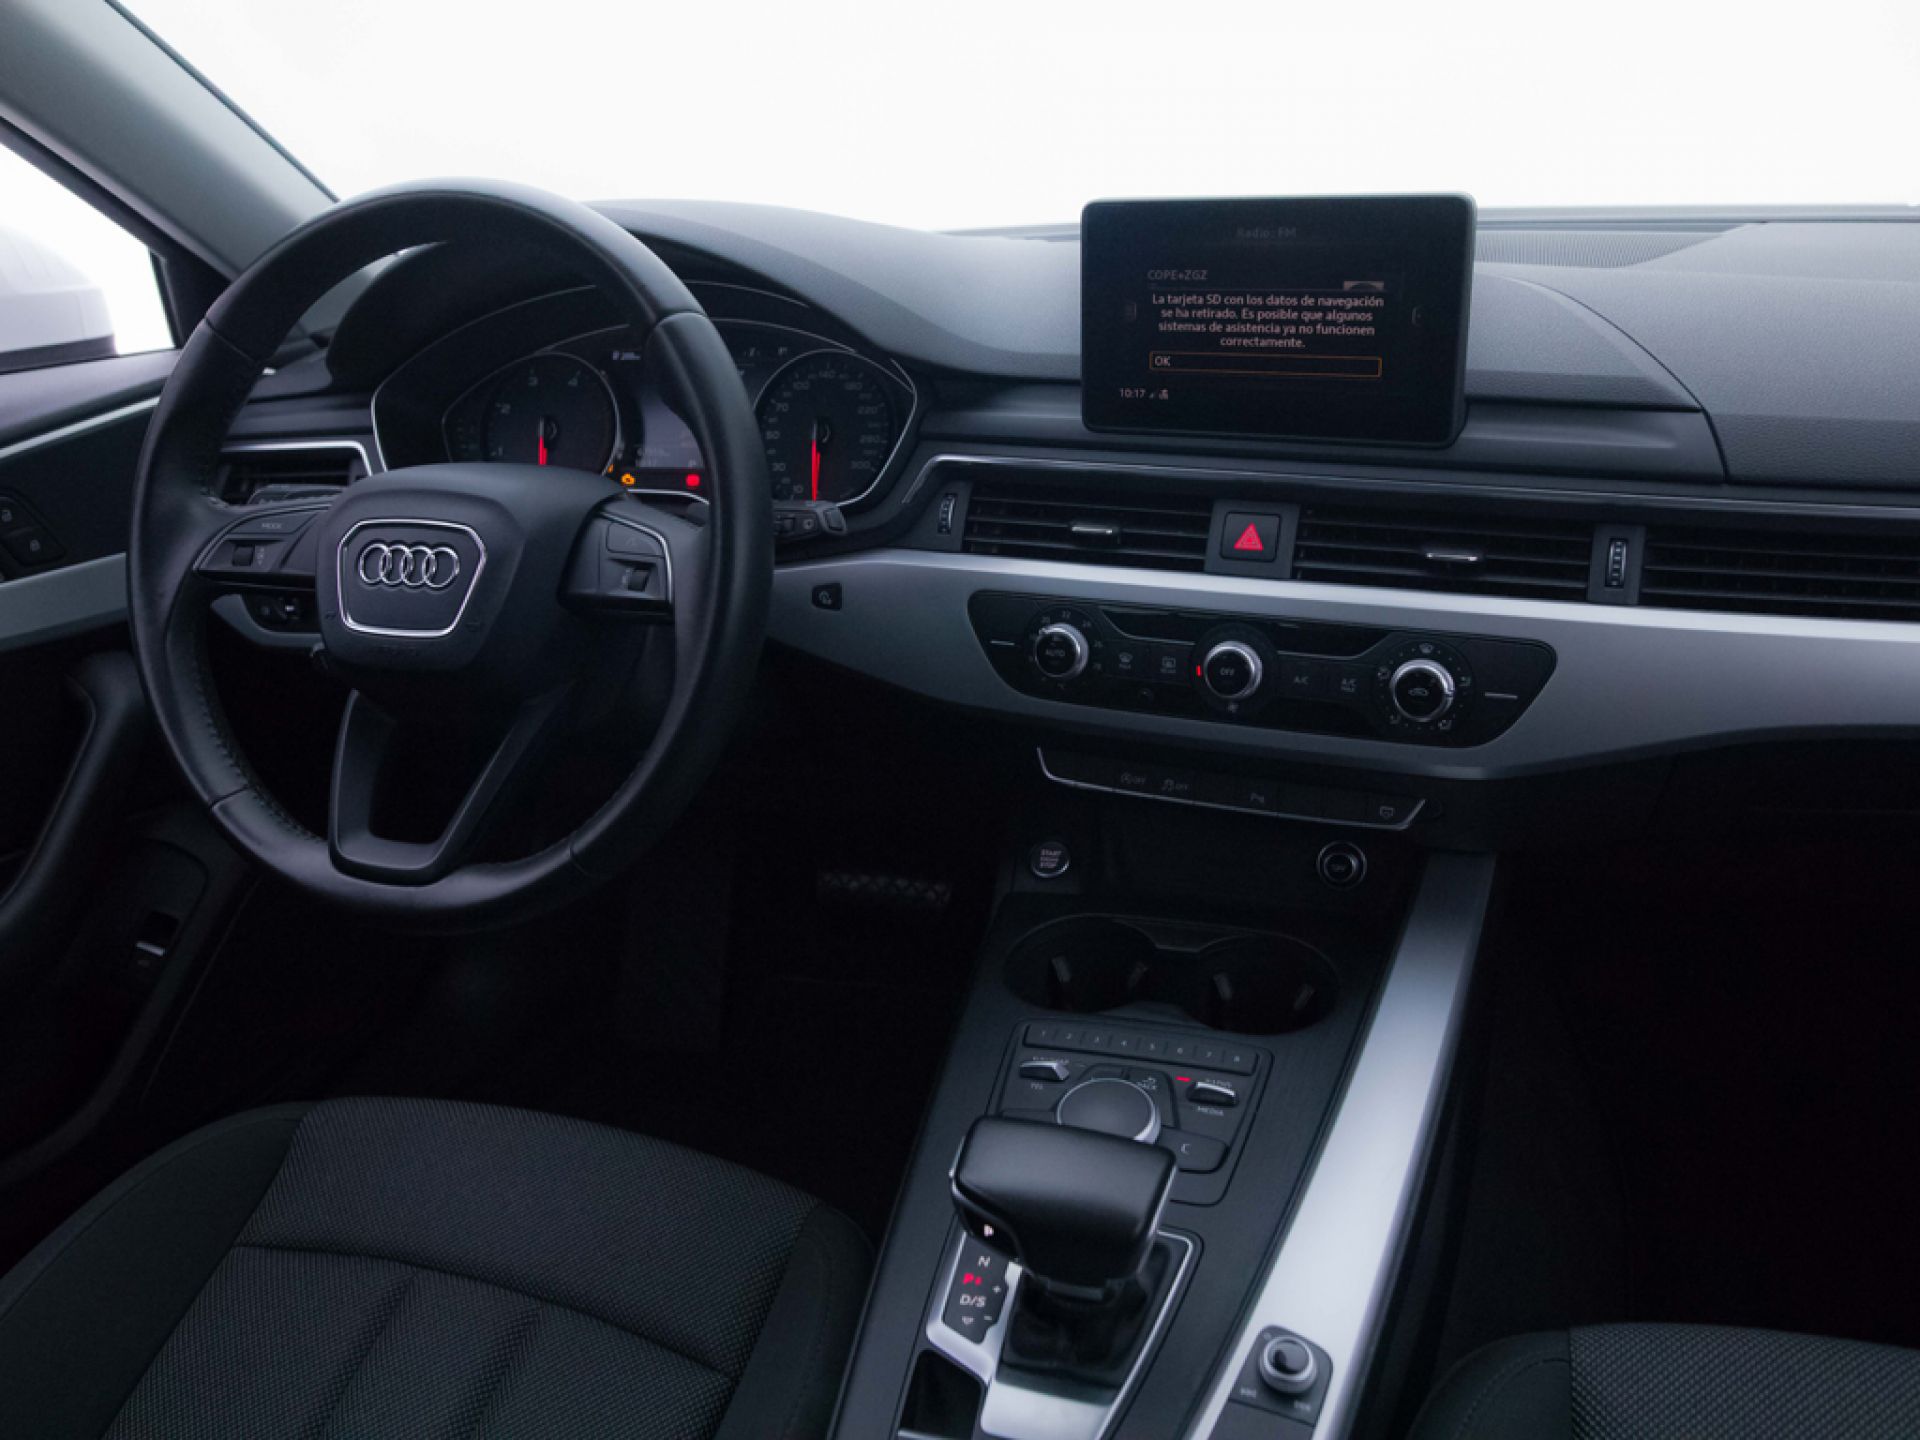 Audi A4 Avant 2.0 TDI ultra S tronic